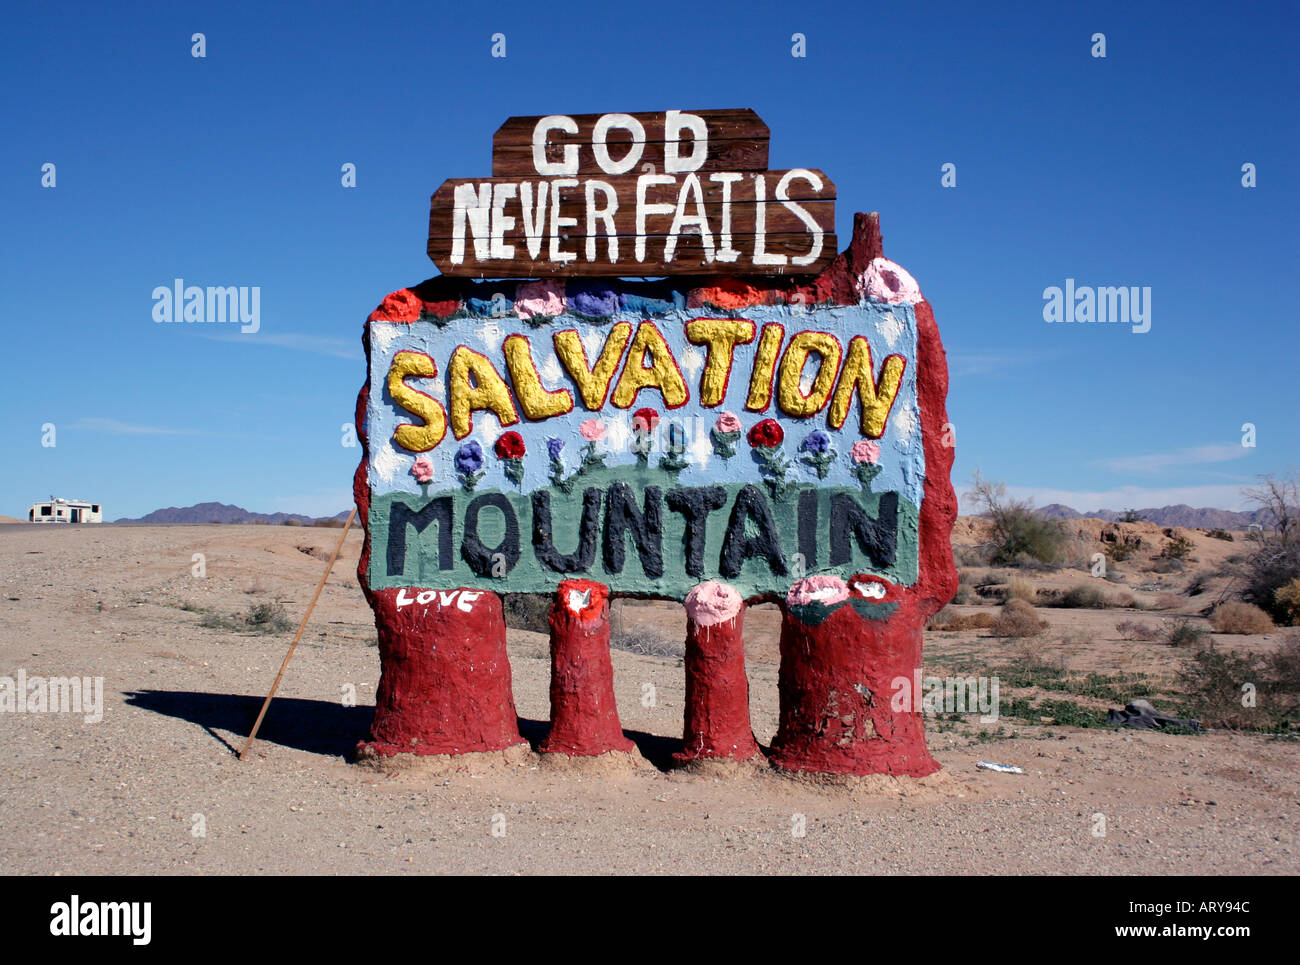 Salvation Mountain art installation near the Salton Sea in California Stock Photo